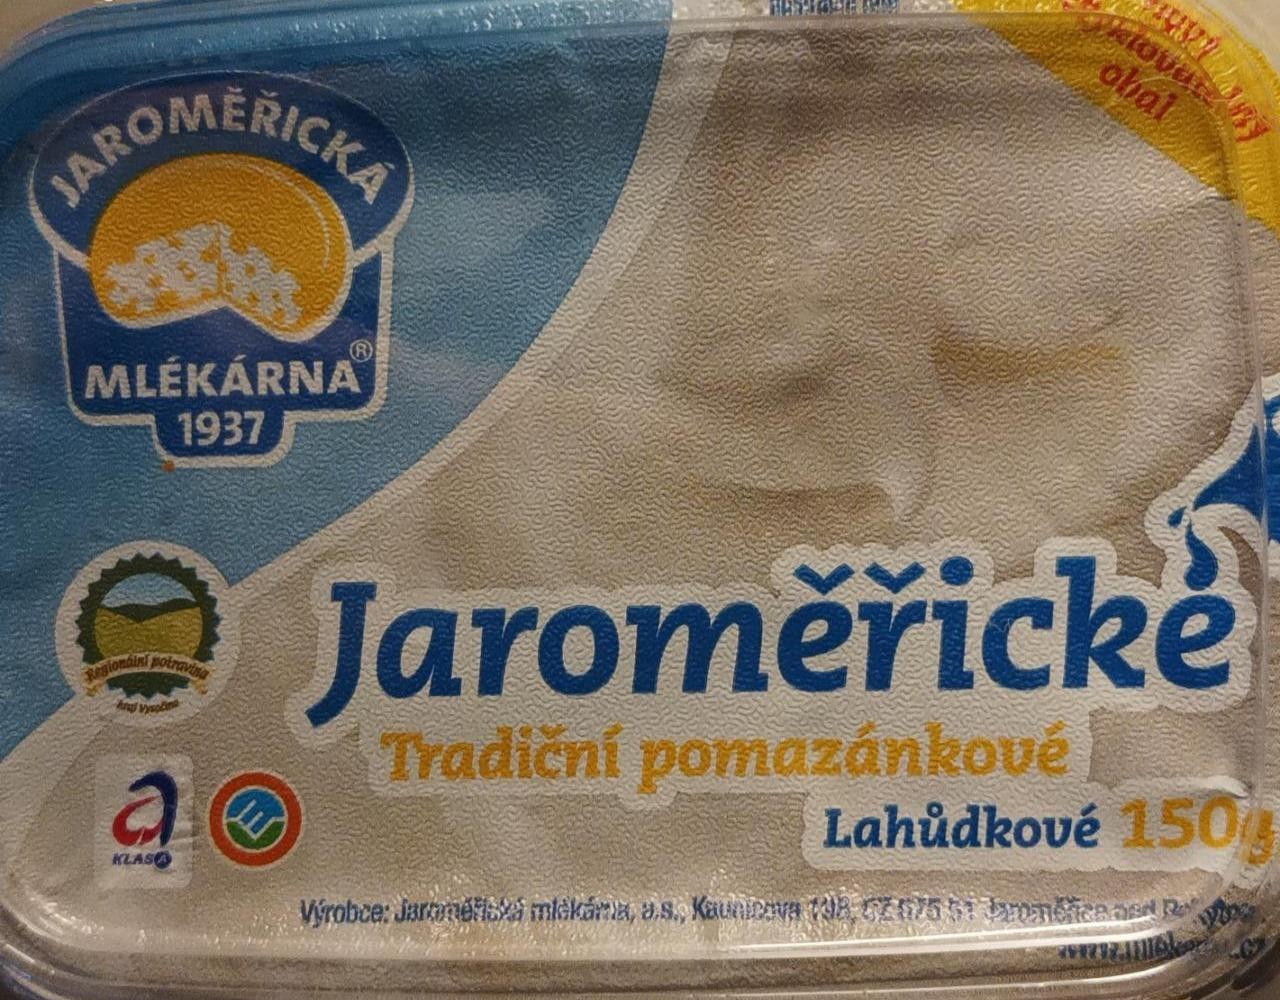 Fotografie - Jaroměřické pomazánkové máslo lahůdkové